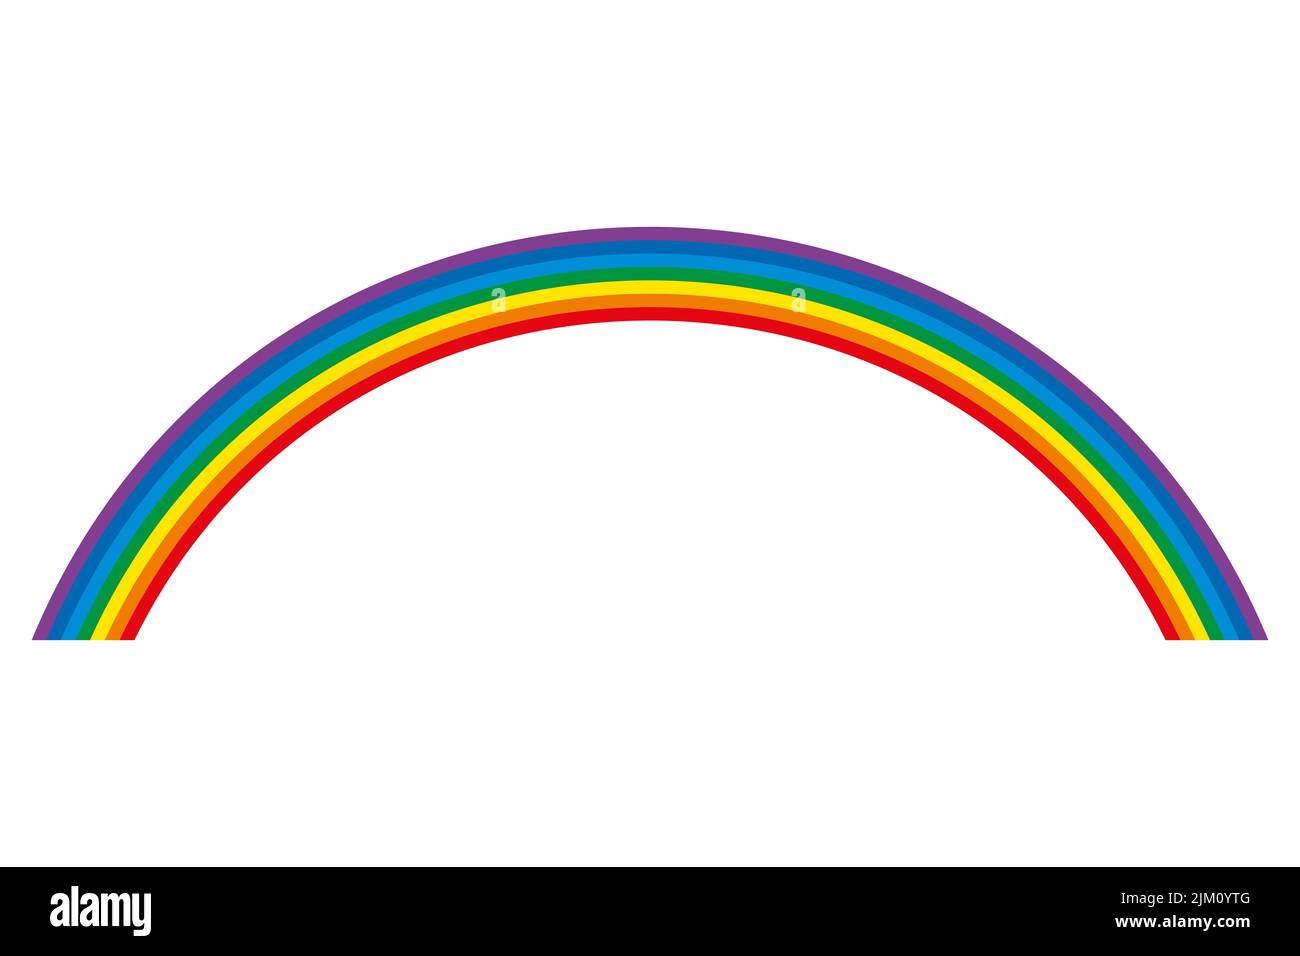 Arco iris, arco circular multicolor. 7 barras de color dobladas que representan el espectro de la luz visible. Rojo, naranja, amarillo, verde, cian, azul, violeta. Foto de stock